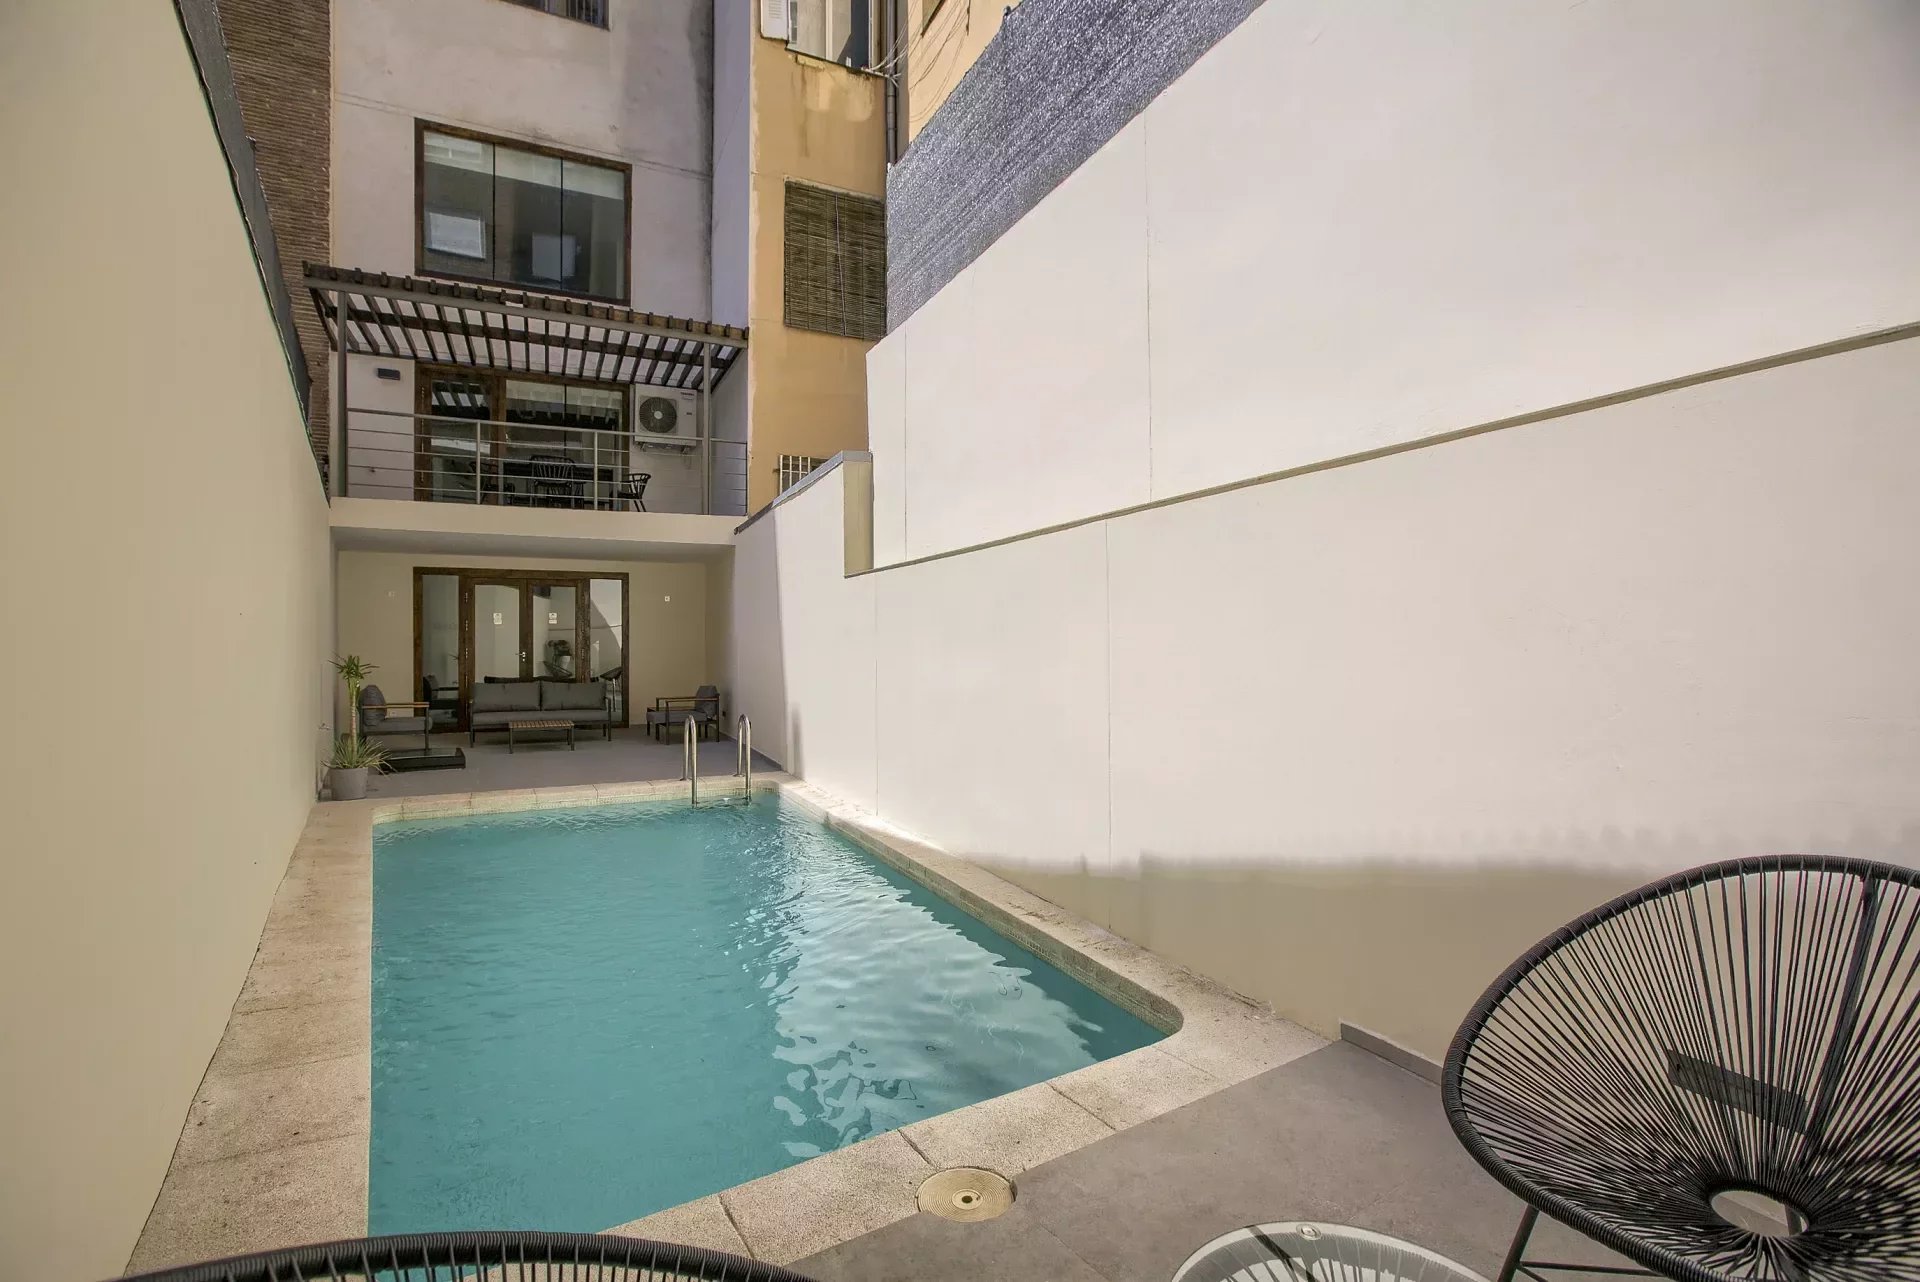 Madrid - Chamberi - Almagro - Triplex meublé de 2 chambres à coucher avec piscine privée - picture 1 title=